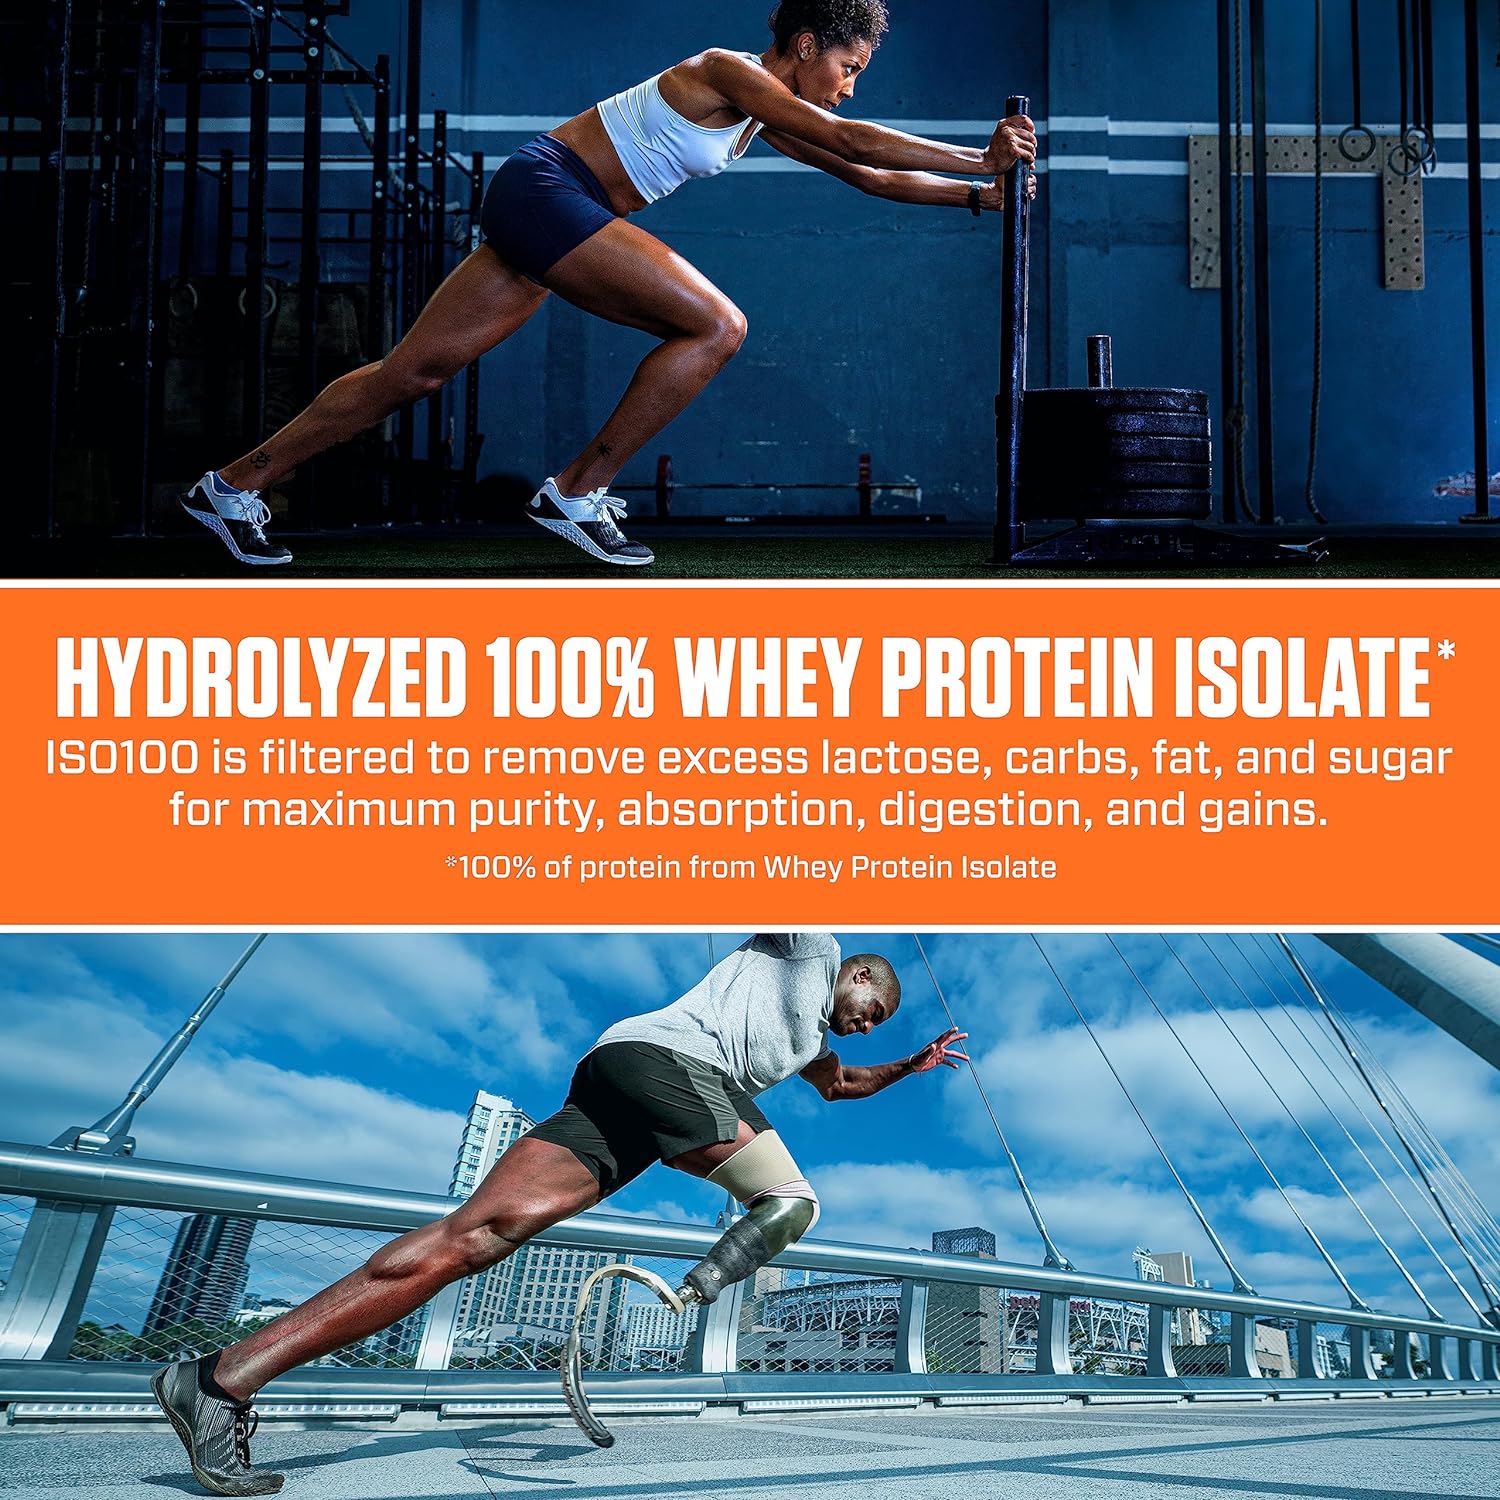 Dymatize ISO100 Hydrolyzed Protein Powder in Dunkin' Mocha Latte Flavo